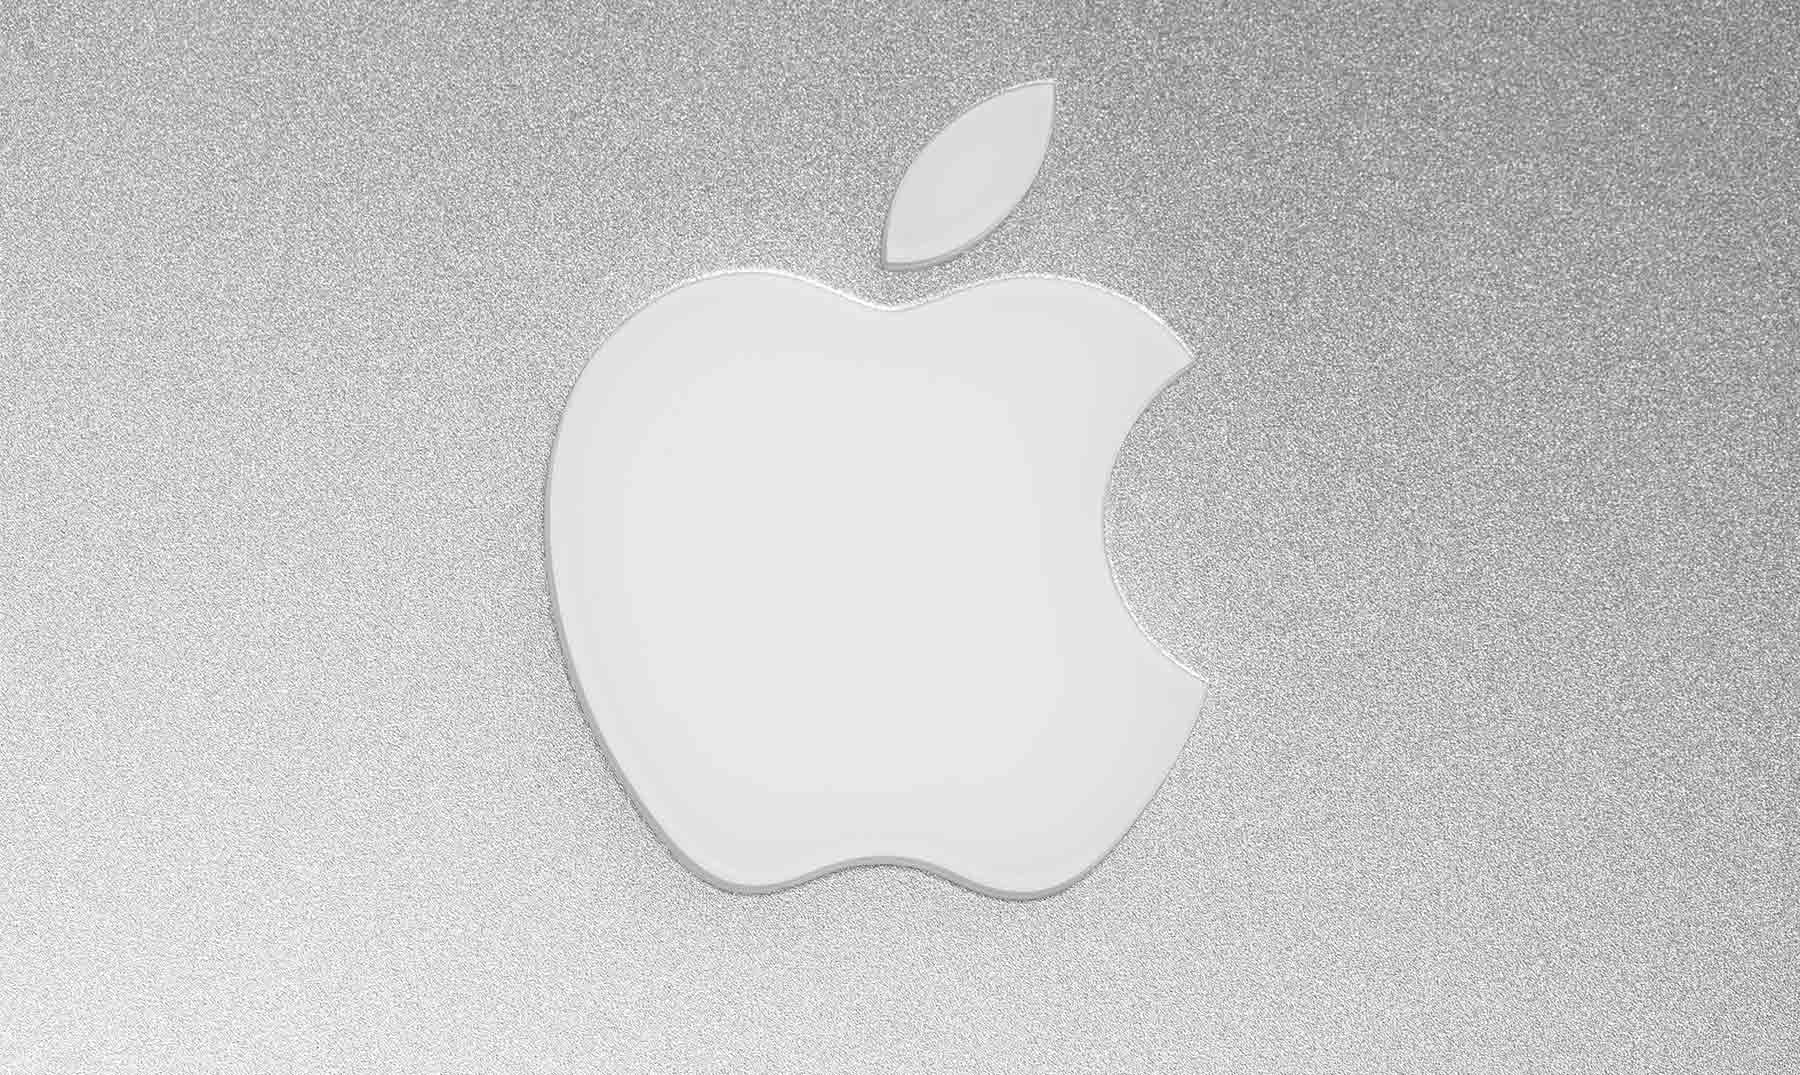 Por qué el logo de Apple es una manzana mordida? | ¡Descúbrelo!